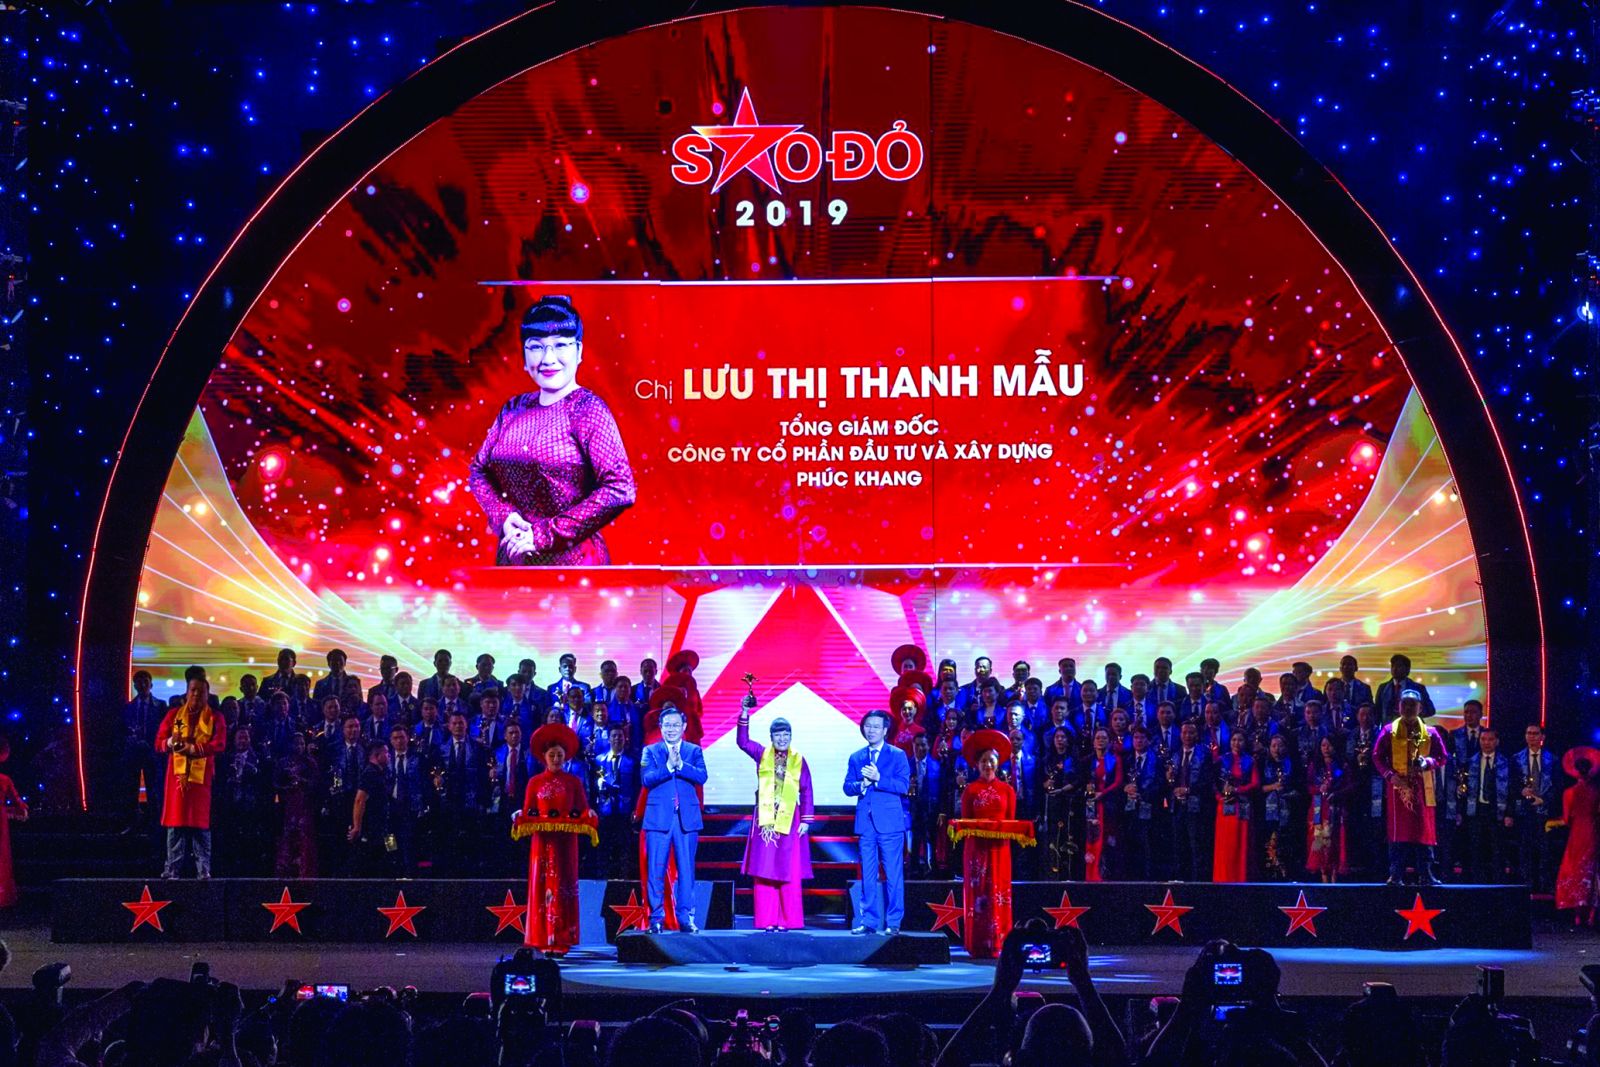 Bà Lưu Thị Thanh Mẫu đạt giải thưởng Sao Đỏ – Top10 doanh nhân trẻ xuất sắc nhất năm 2019